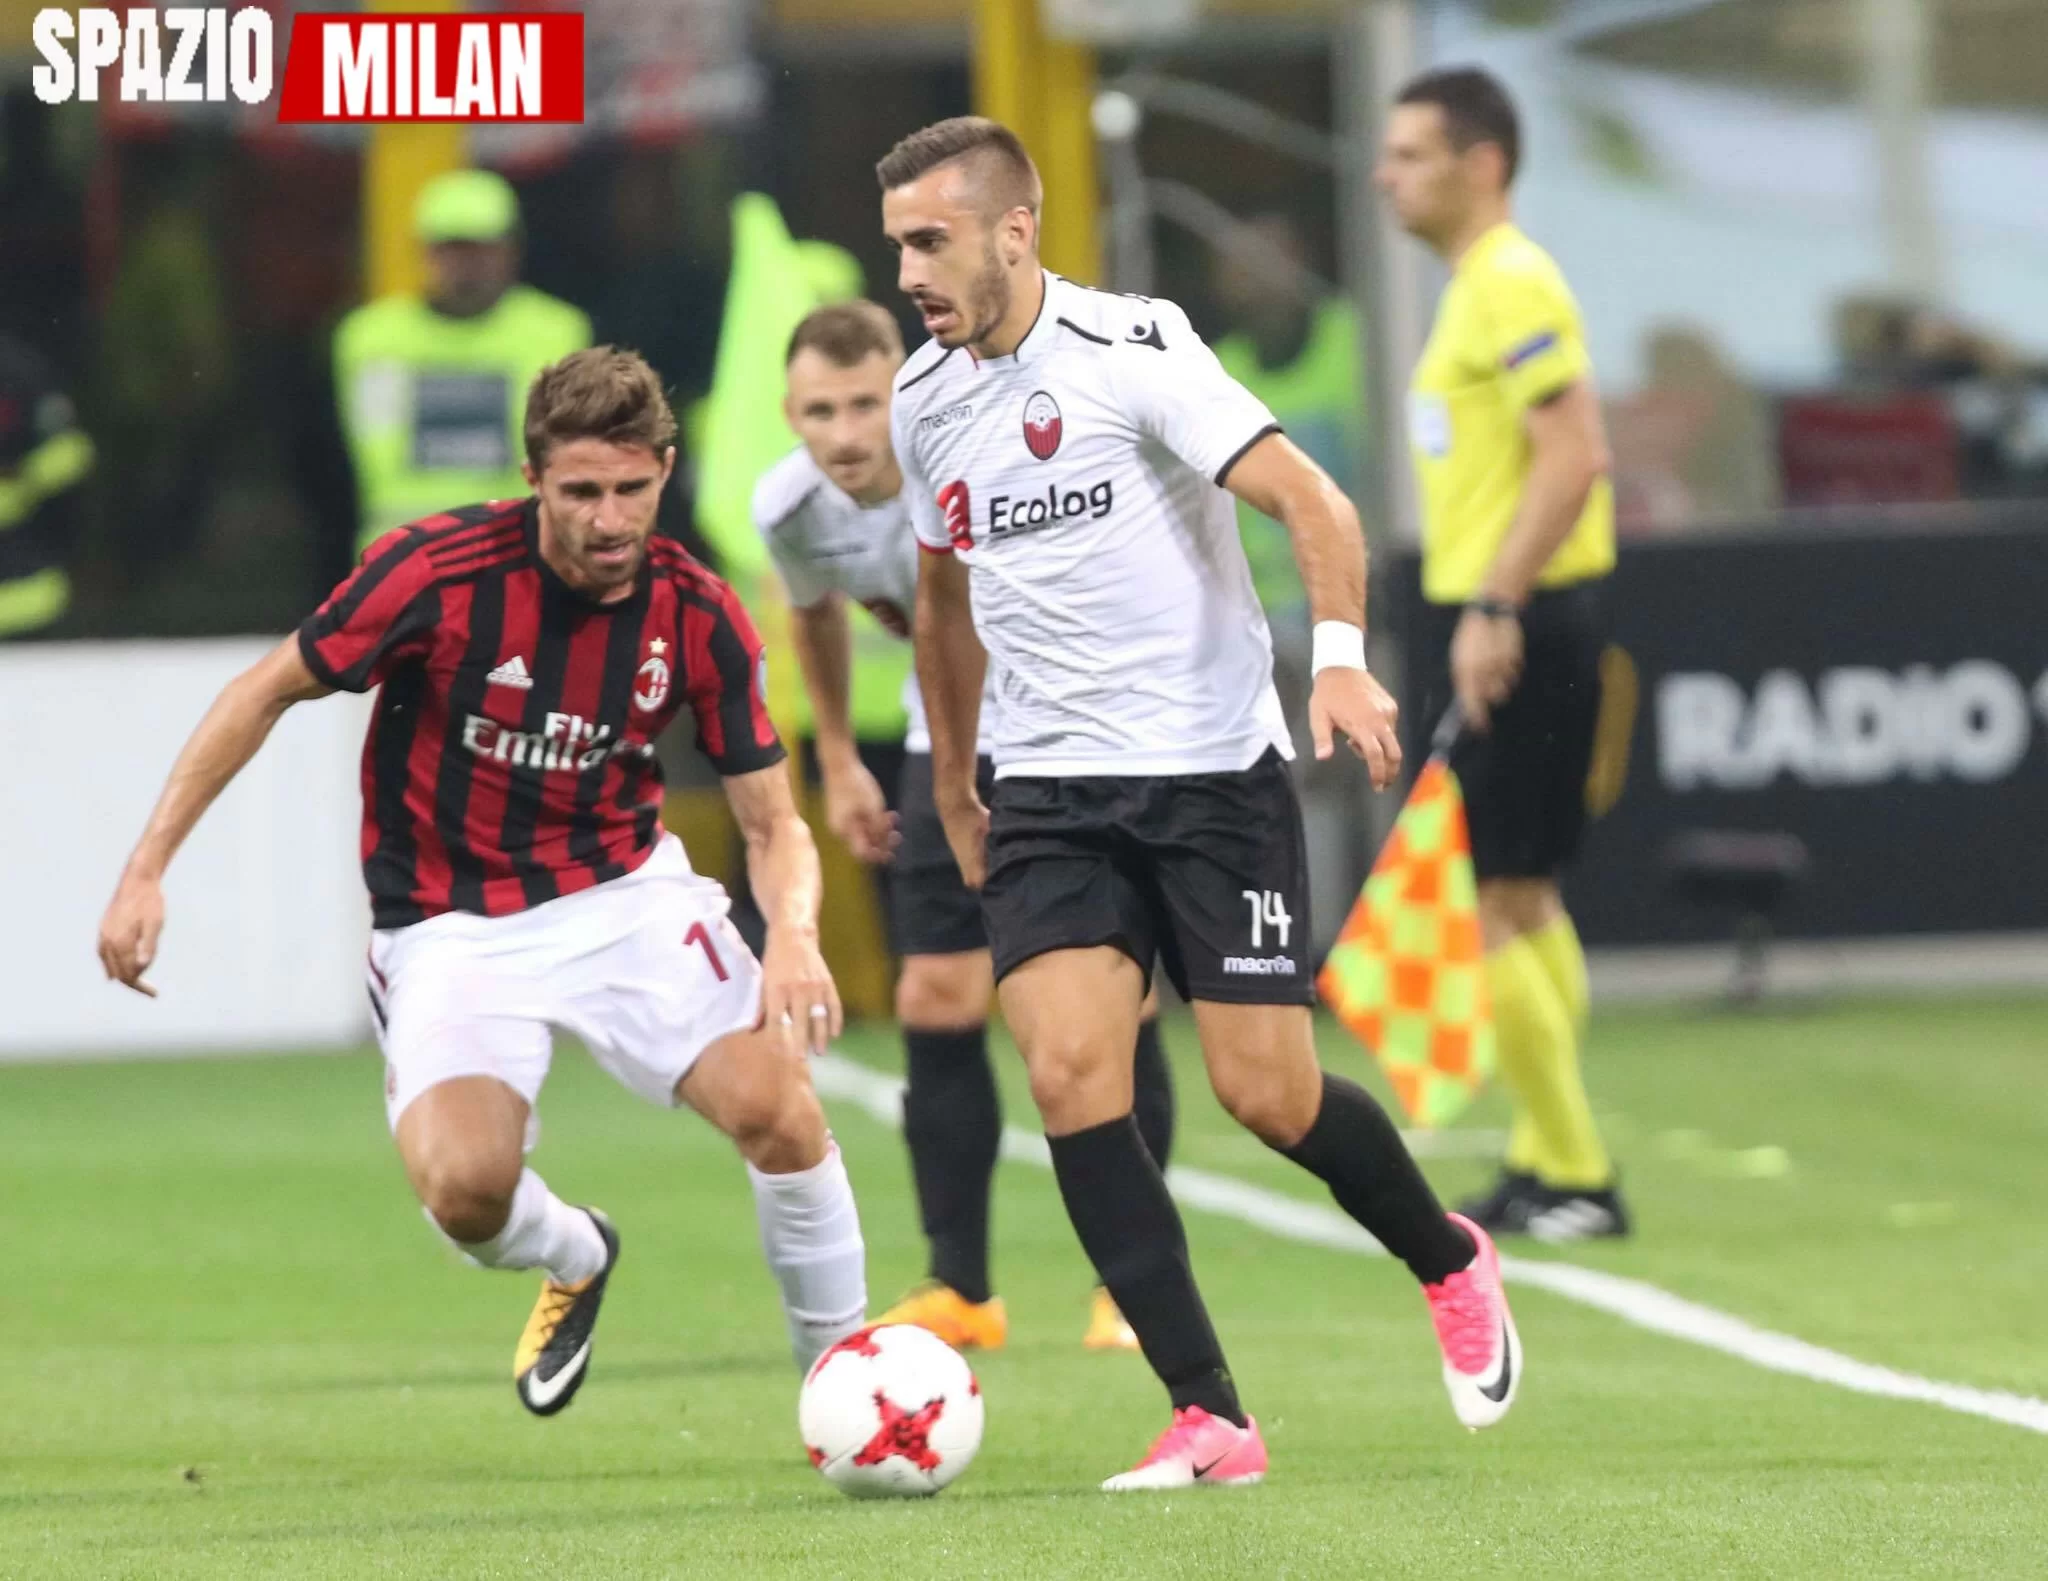 Il Milan arriva ai gironi con 10 gol fatti e 0 subiti